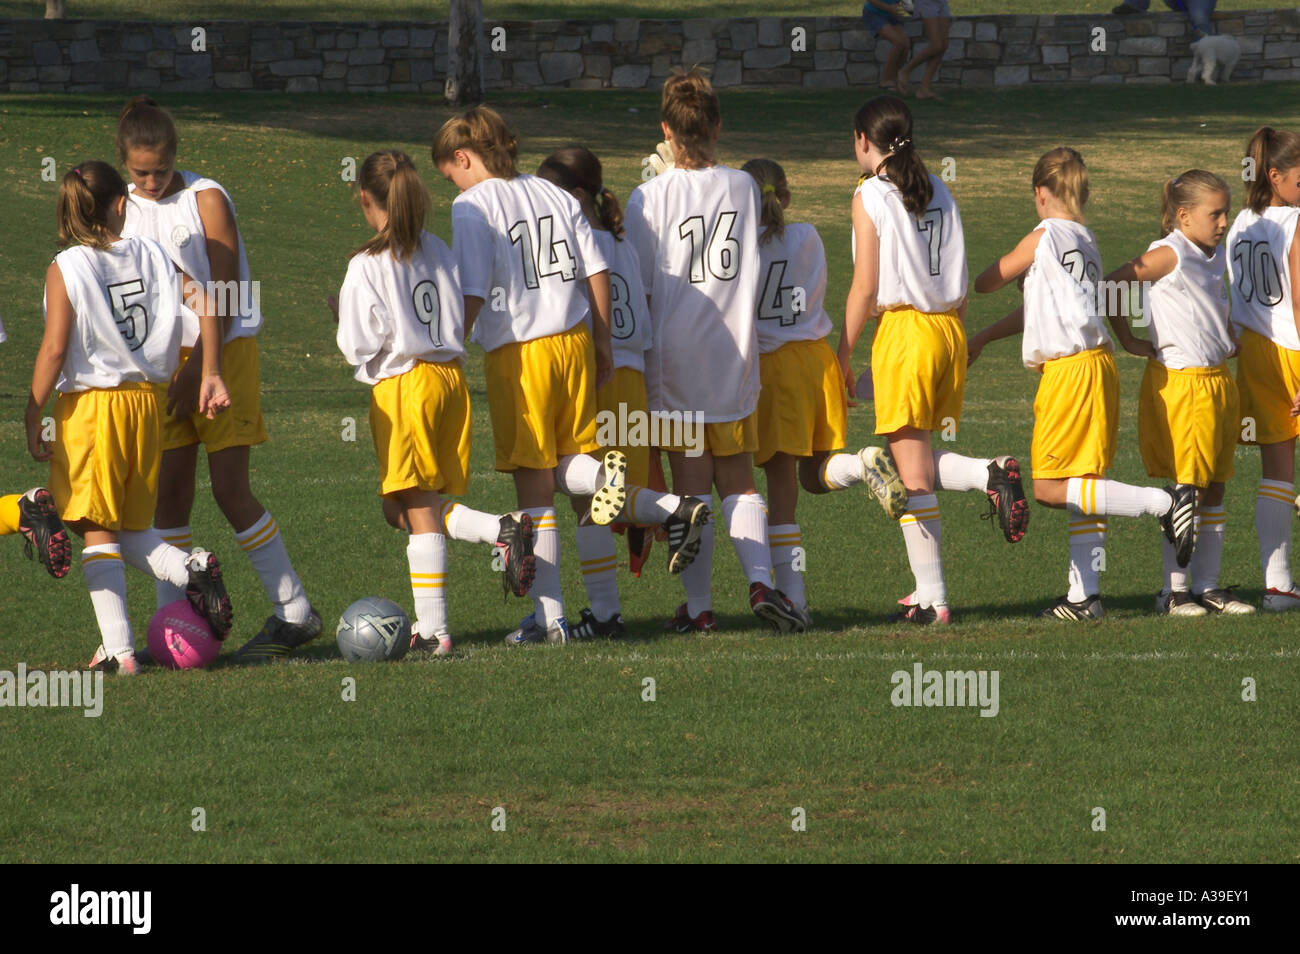 girl s soccer team Stock Photo